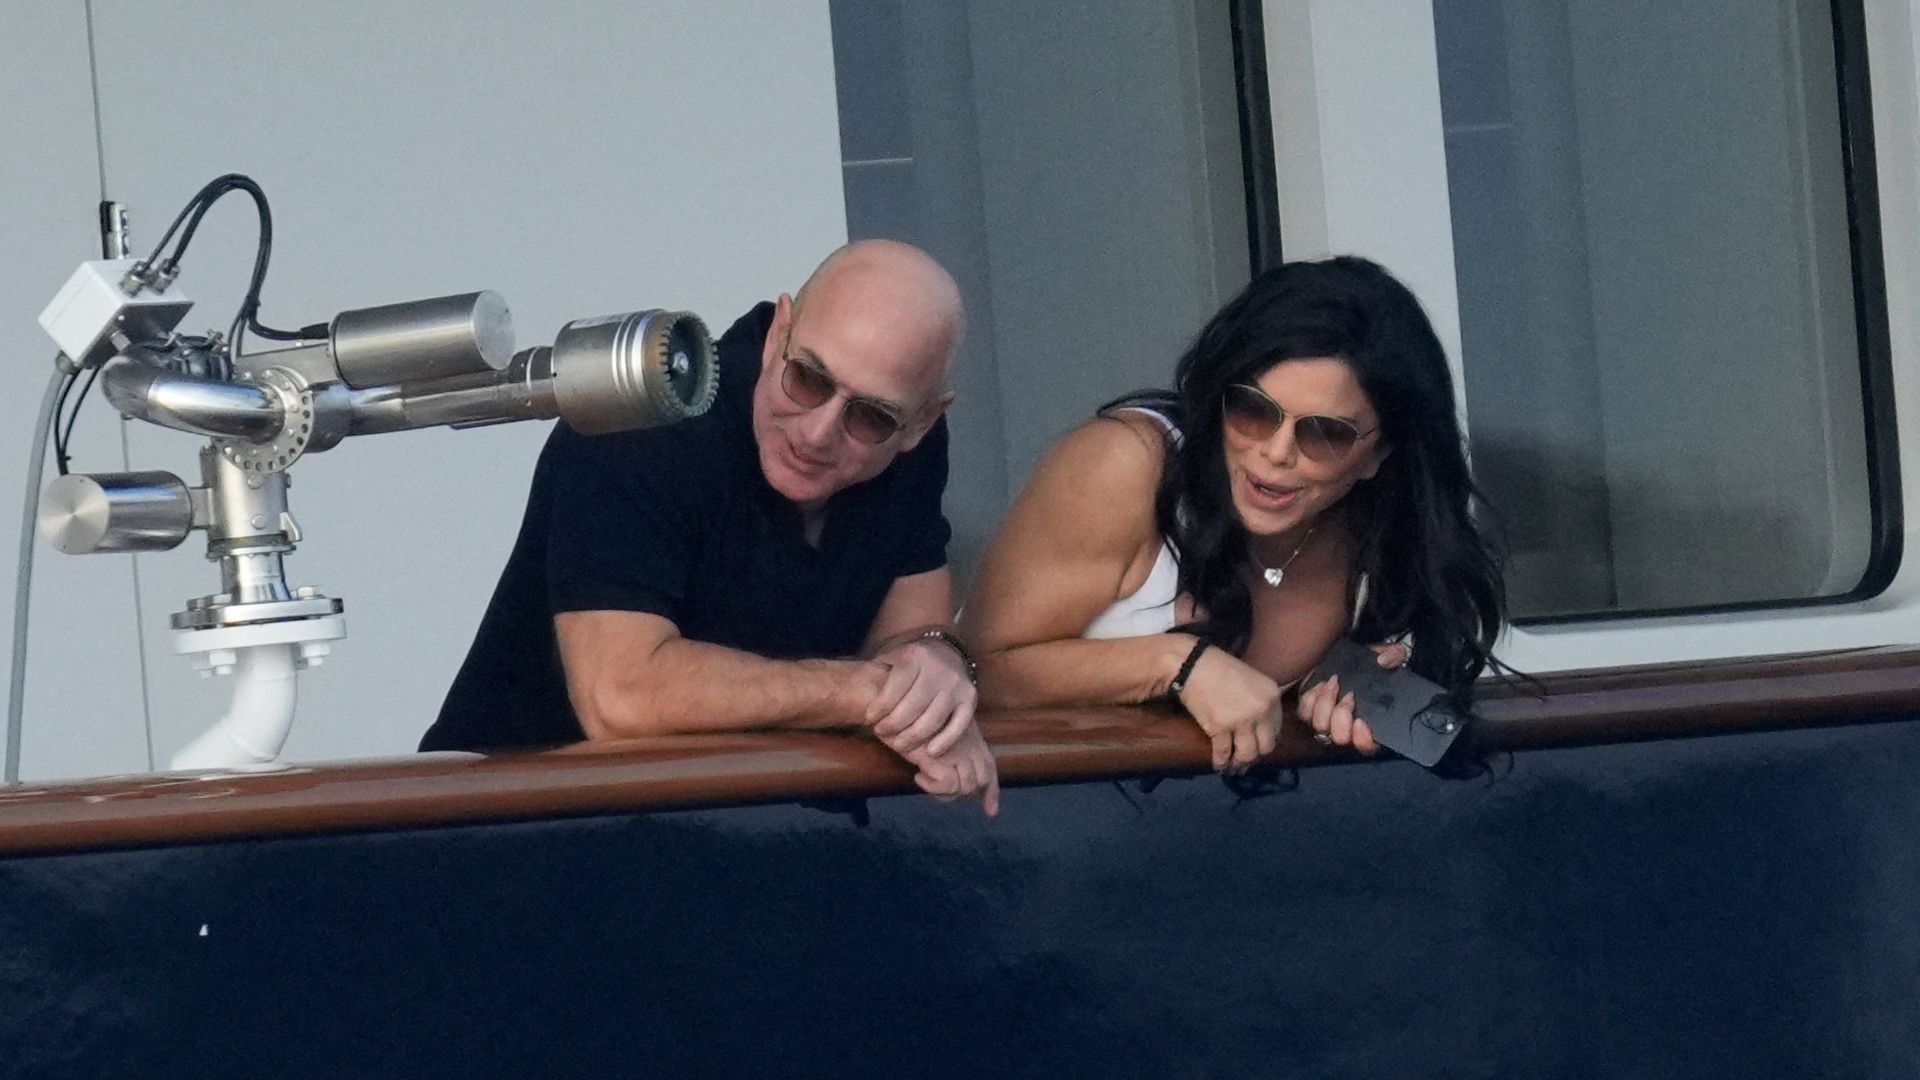 Jeff Bezos and his girlfriend Lauren look smitten on yacht together